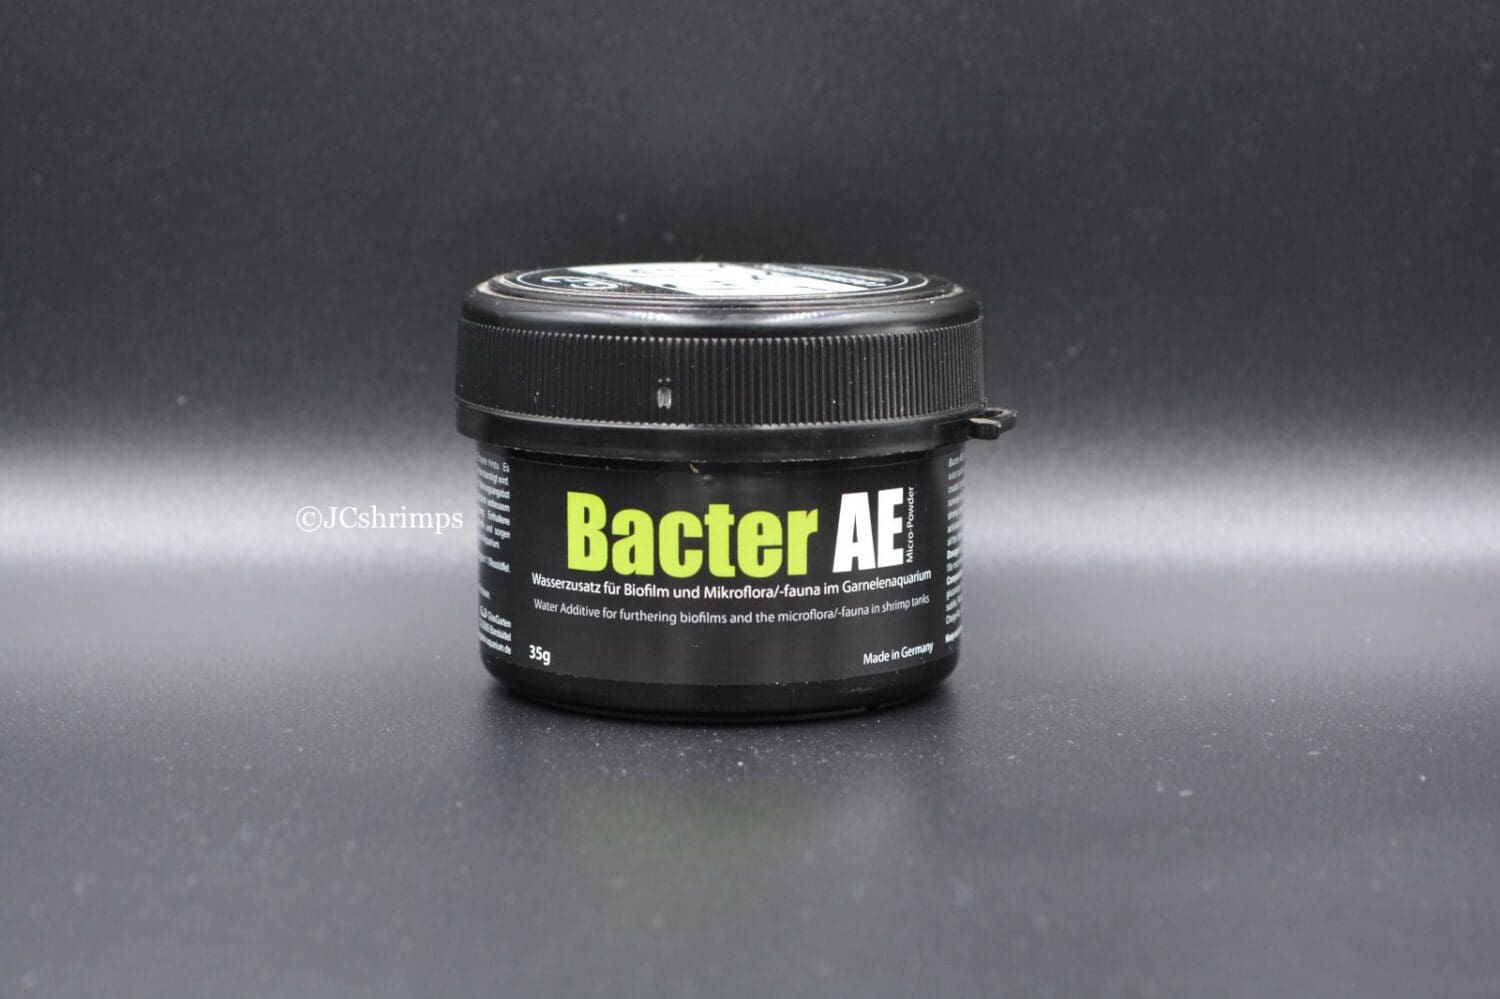 GlasGarten Bacter AE